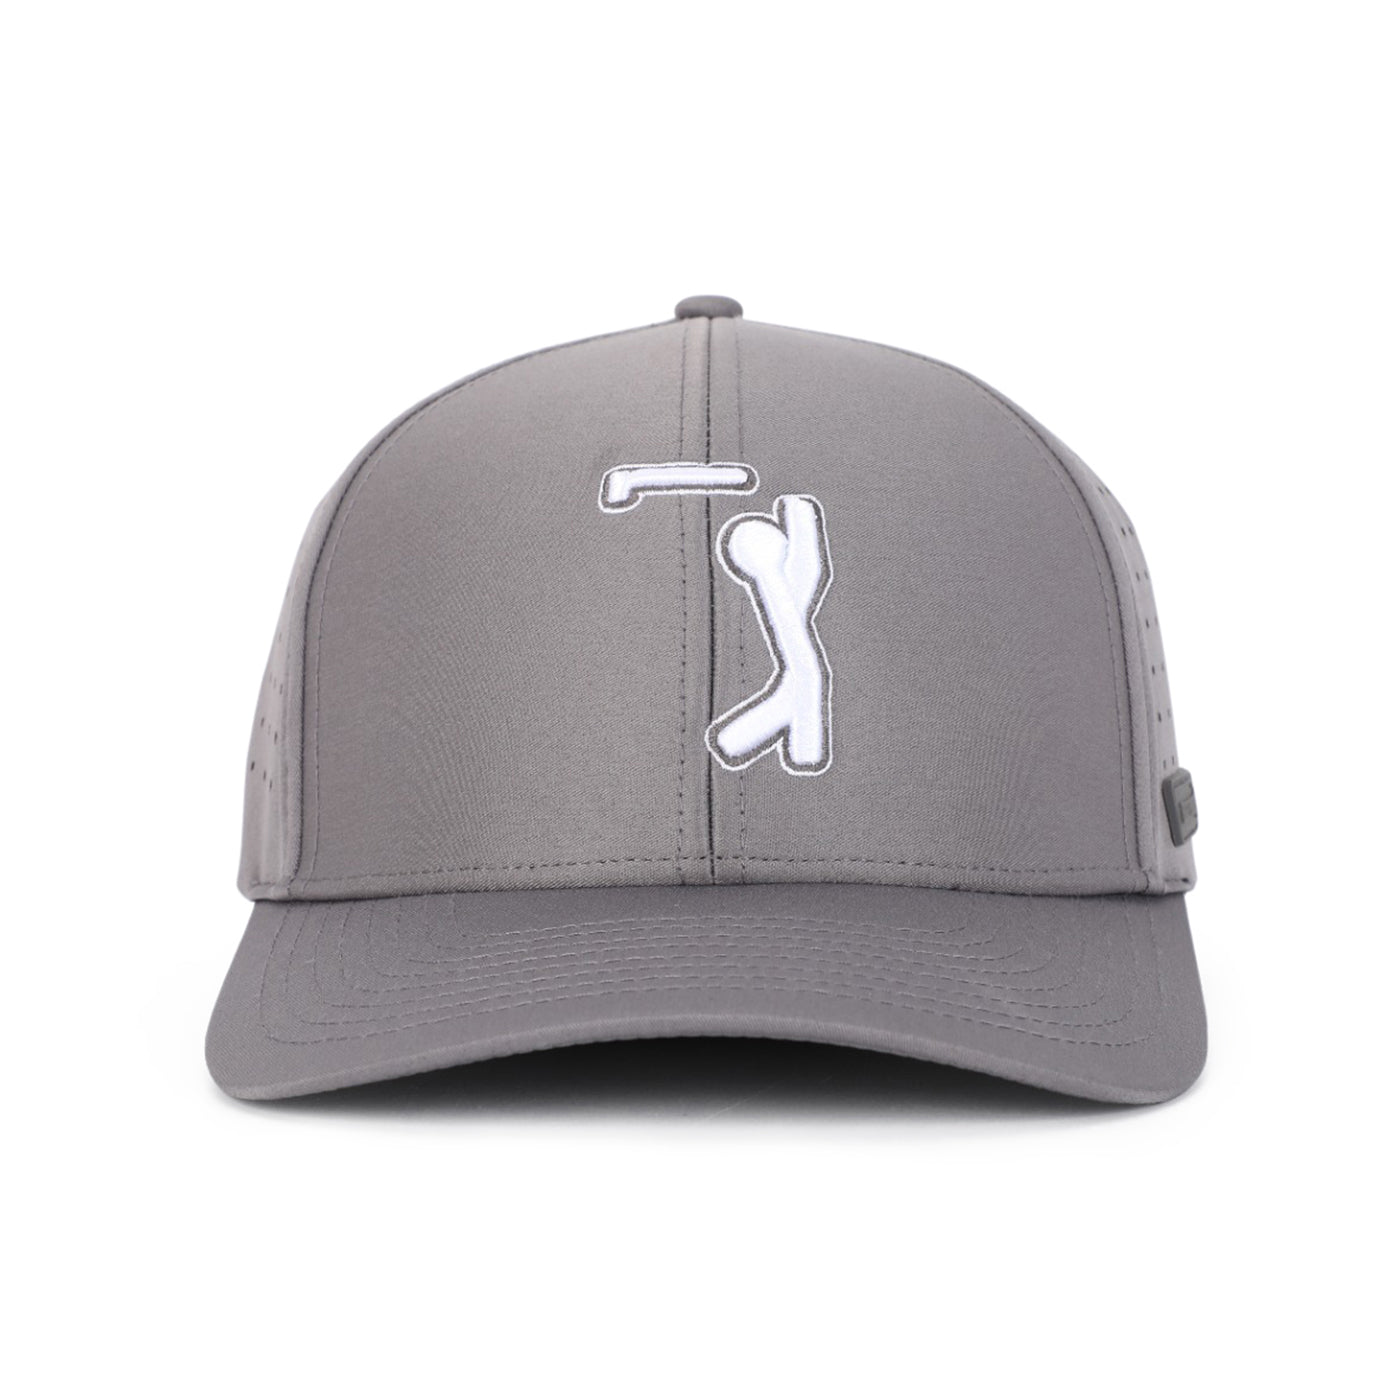 Bogeyman Dark Grey - Performance Golf Hat - Fitted